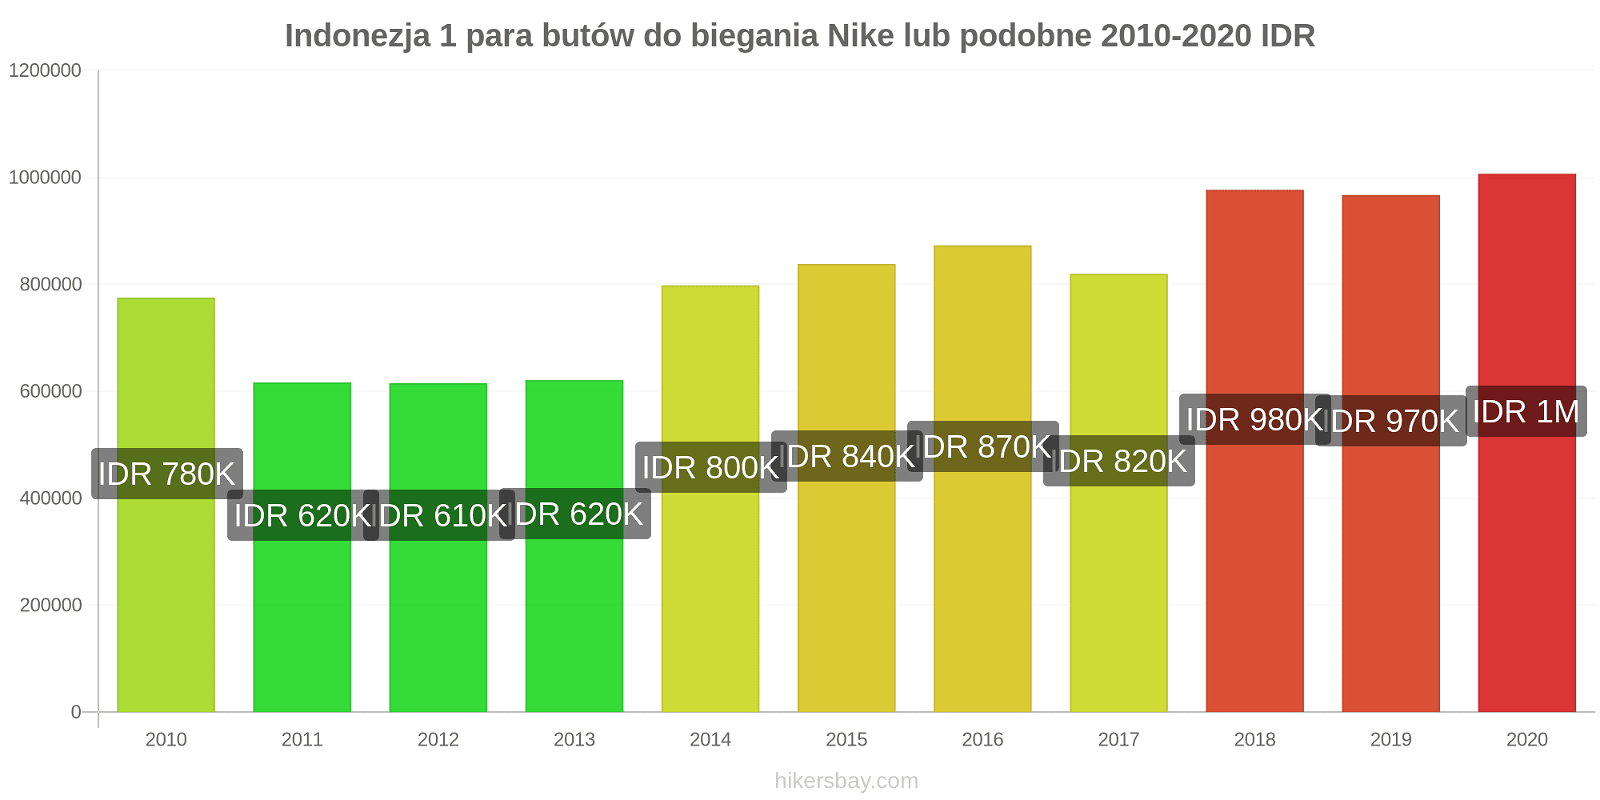 Indonezja zmiany cen 1 para butów do biegania Nike lub podobne hikersbay.com